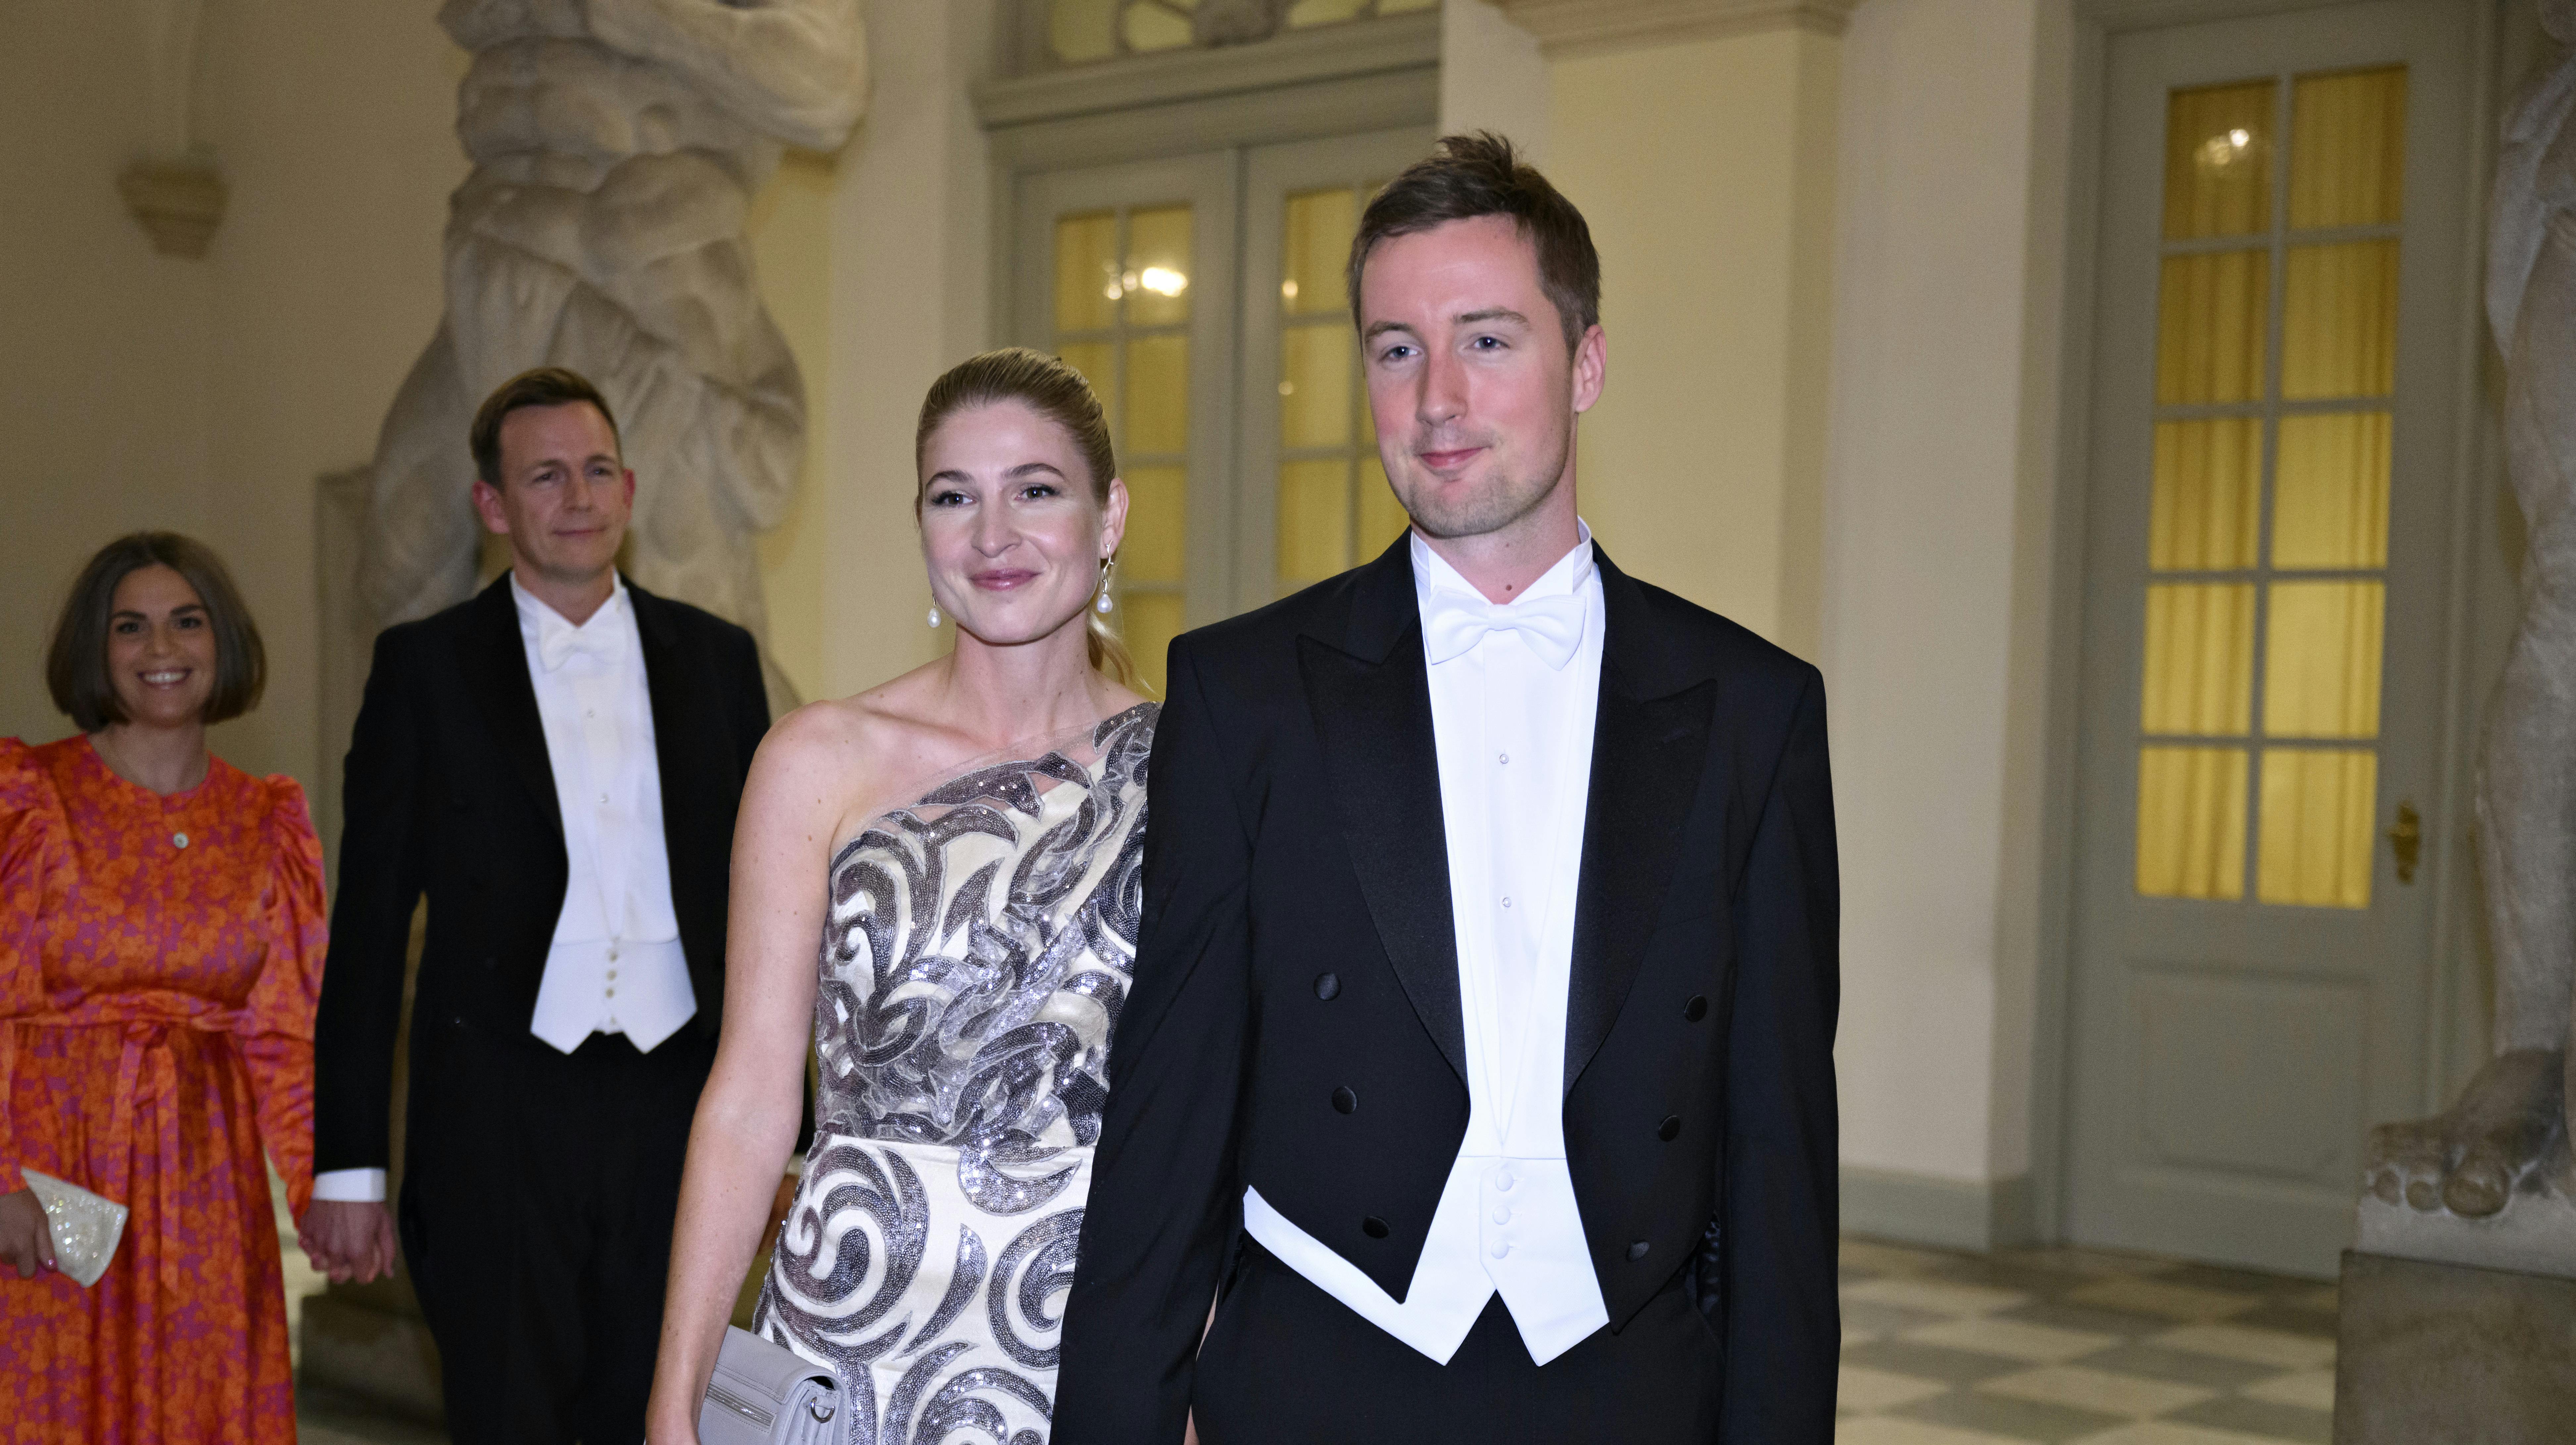 Medlem af Folketinget Jacob Mark (SF) og Christina Krzyrosiak Hansen (S) ankommer til Drabantsalen før aftenselskab på Christiansborg Slot under fejringen af dronningens 50-års regeringsjubilæum